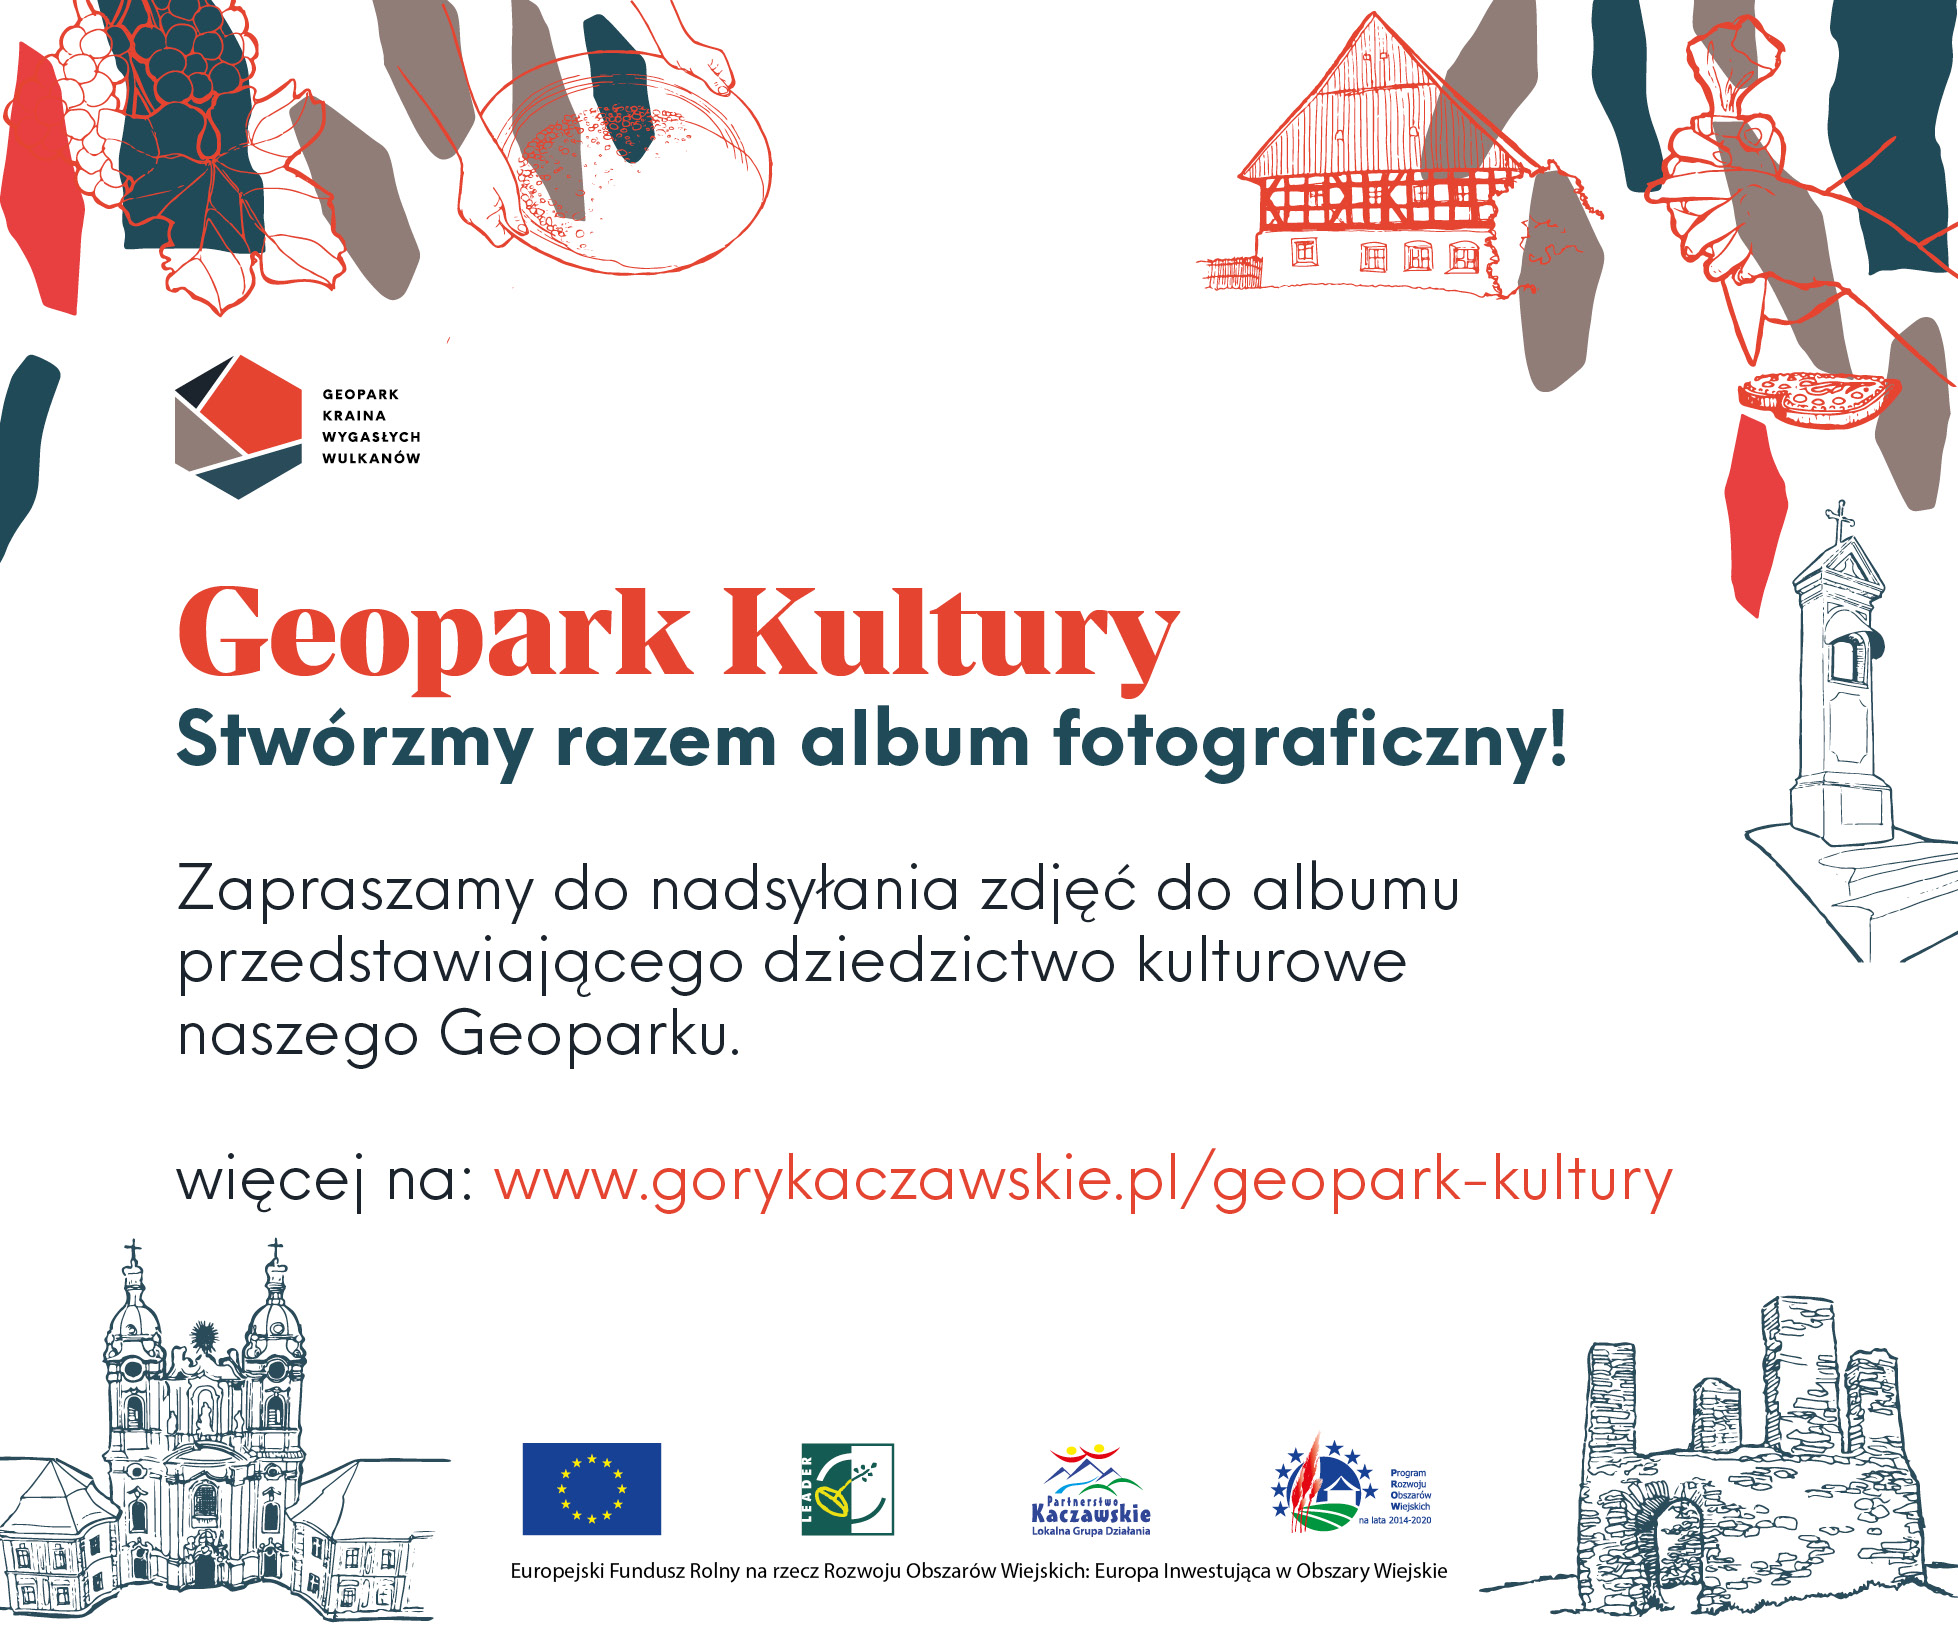 Geopark Kultury! stwórzmy razem album fotograficzny Zapraszamy do nadsyłania zdjęć do albumu przedstawiającego dziedzictwo kulturowe naszego geoparku więcej na www.gorykaczawskie.pl/geopark-kultury